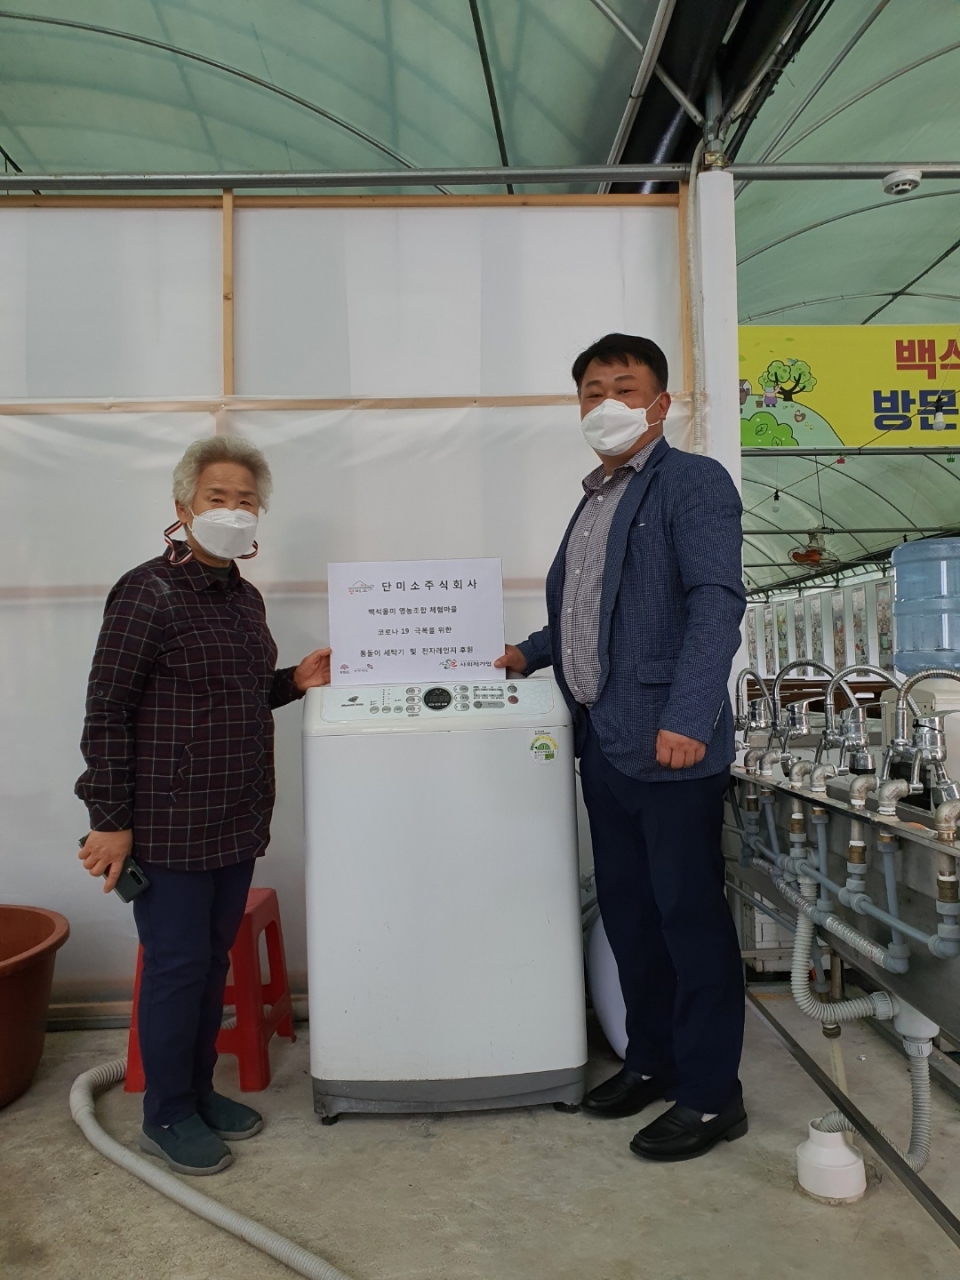 단미소(주) 박상길 대표(사진 오른쪽)가 백석올미영농조합체험마을에 80만원 상당의 후원품을 전달했다.